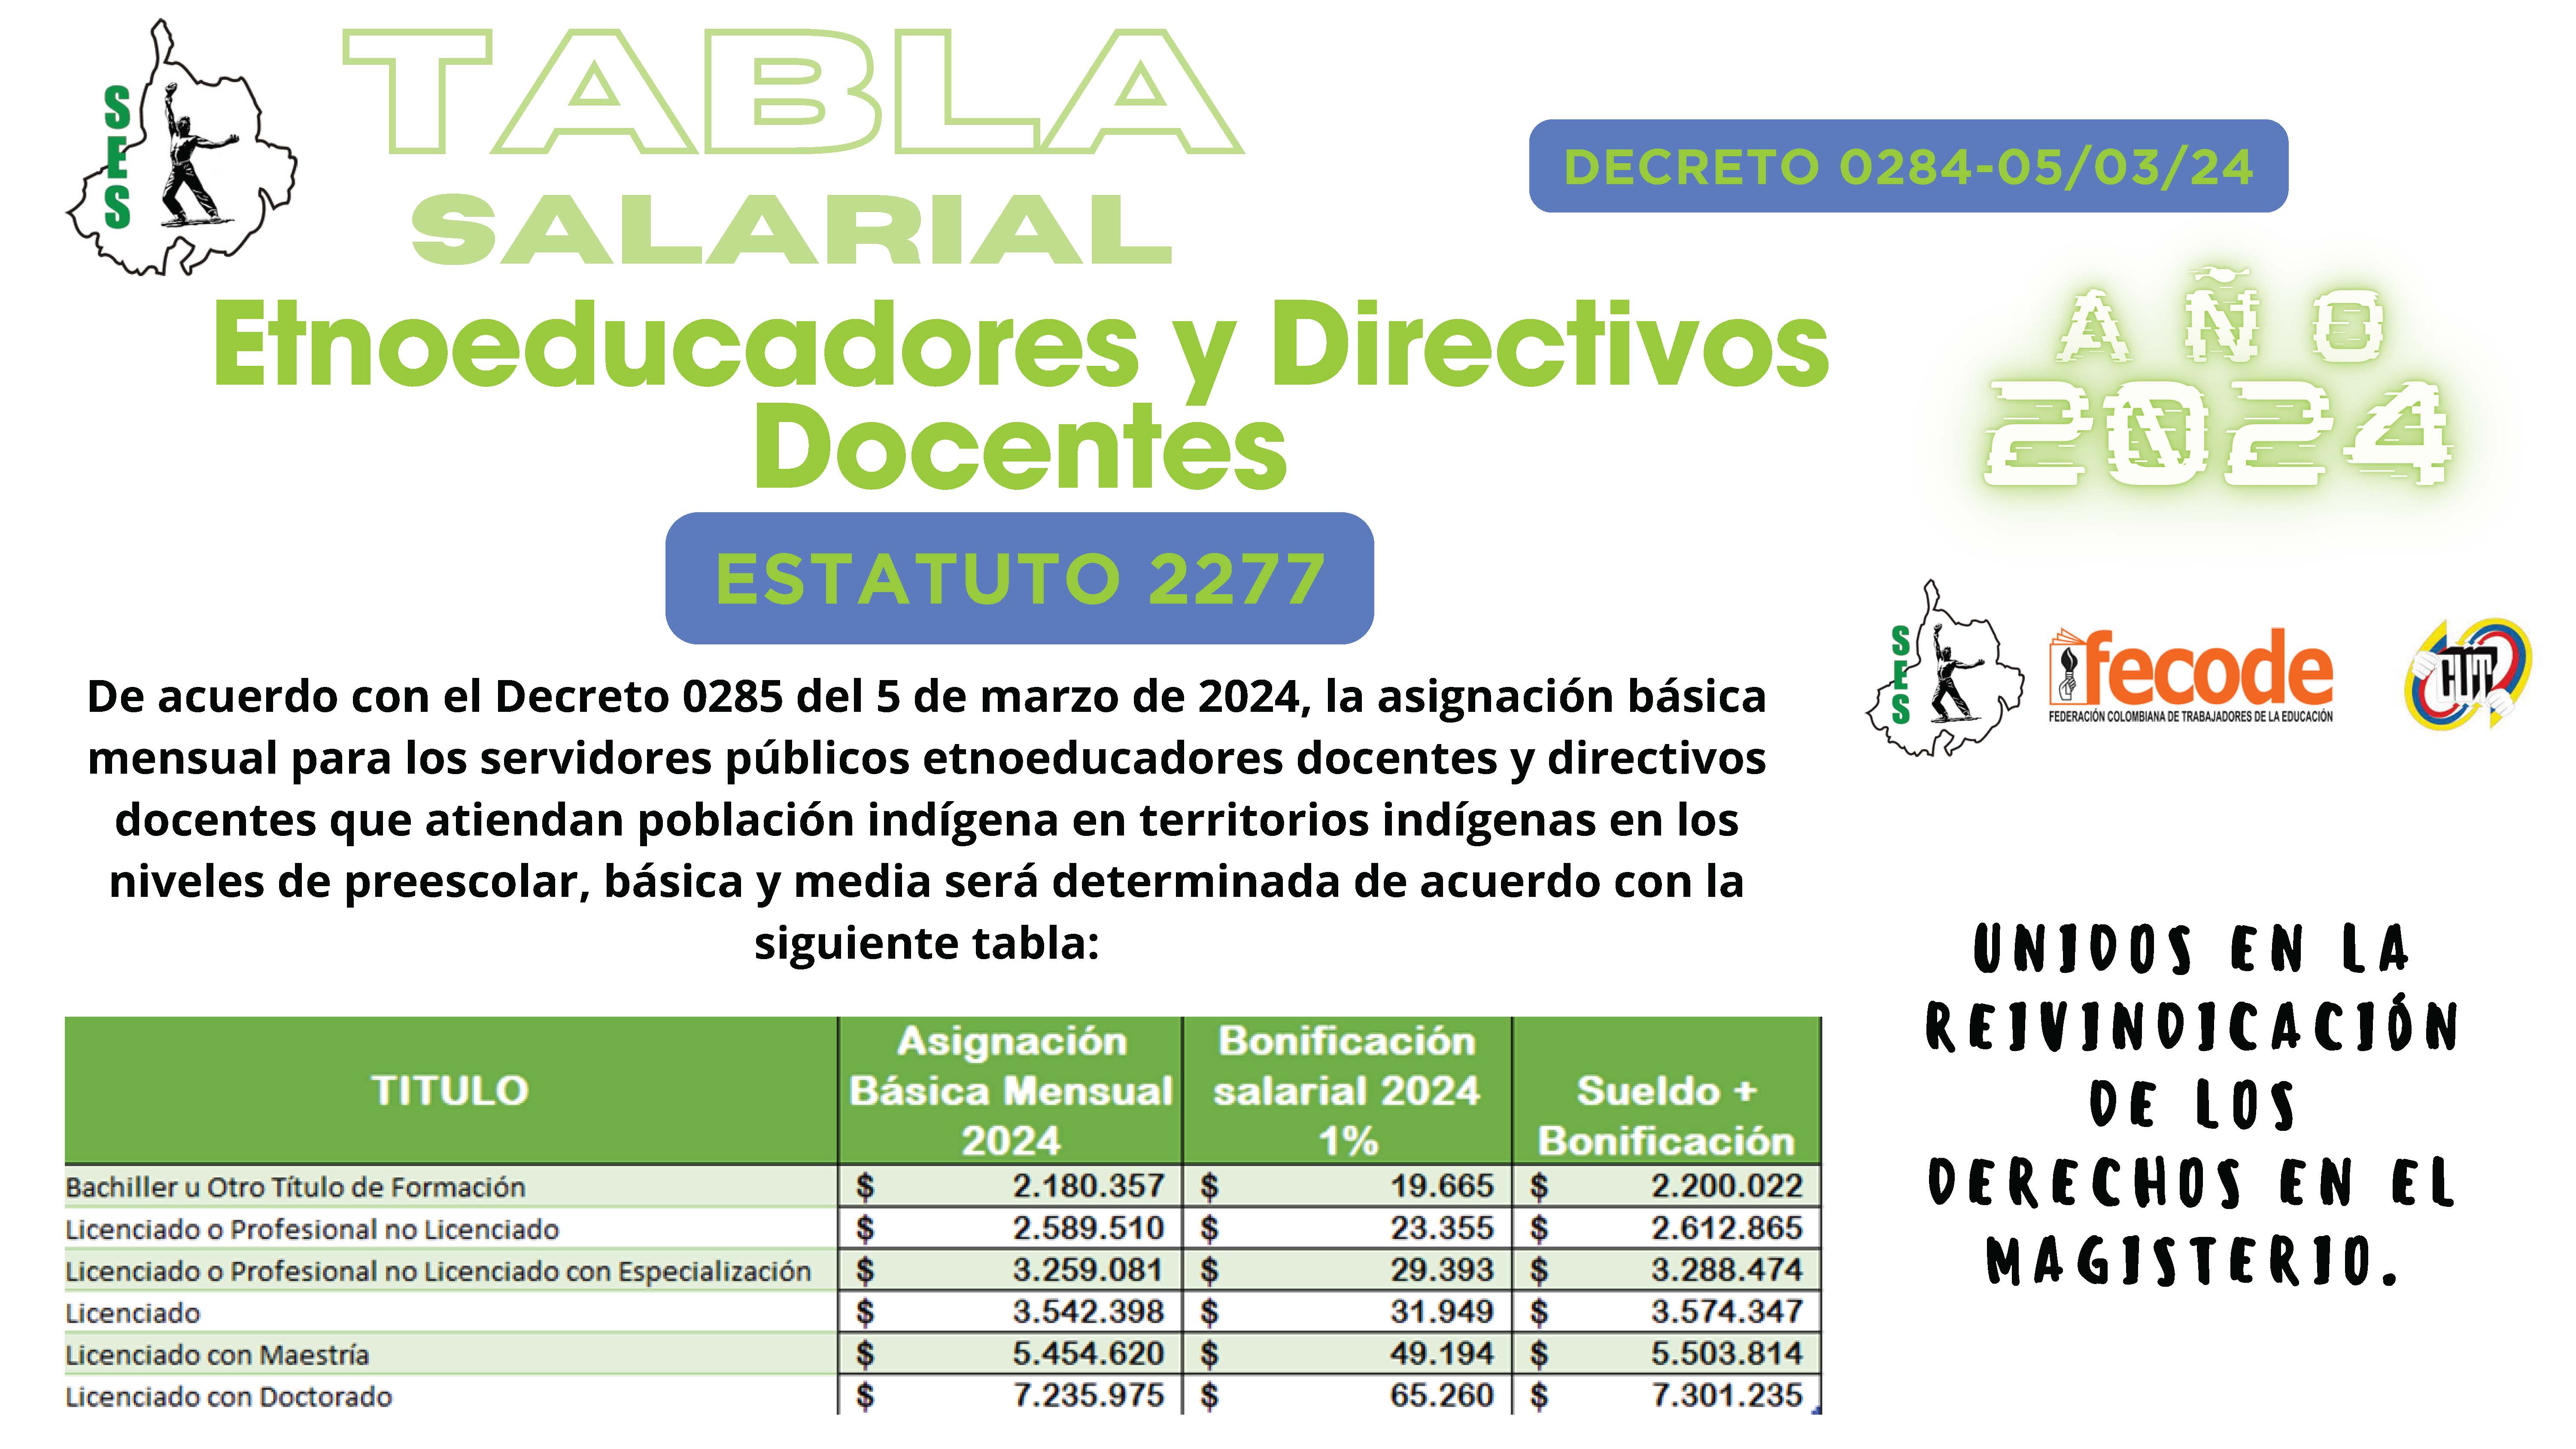 TABLA SALARIAL ETHNOEDUCADORES Y DIRECTIVOS DOCENTES 2024